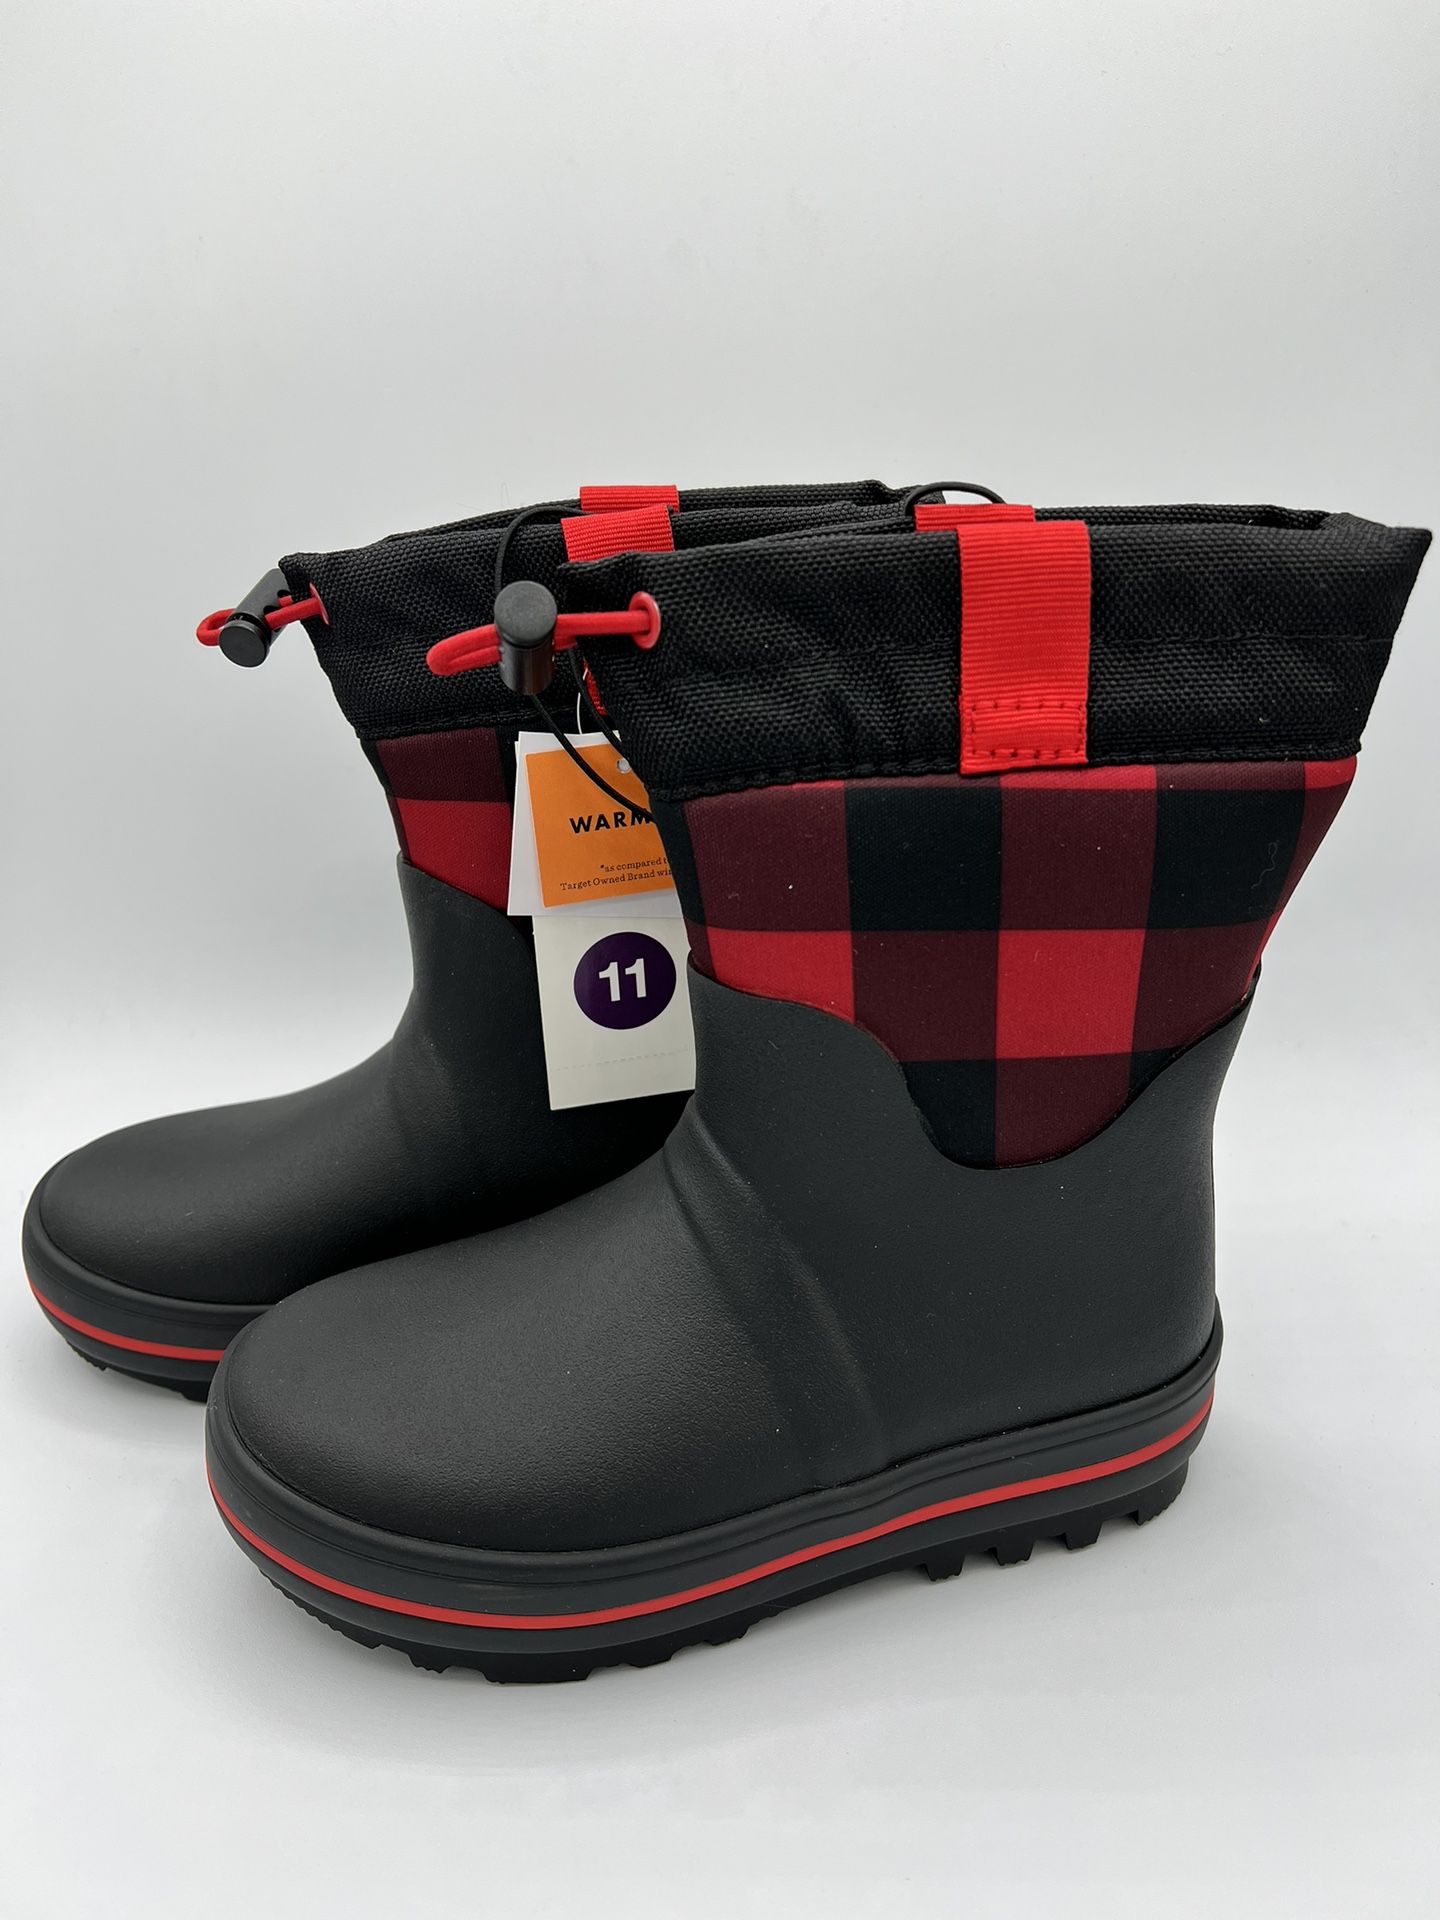 Waterproof Boots, Size 11 Kids Cat & Jack waterproof boots, size 11 kids